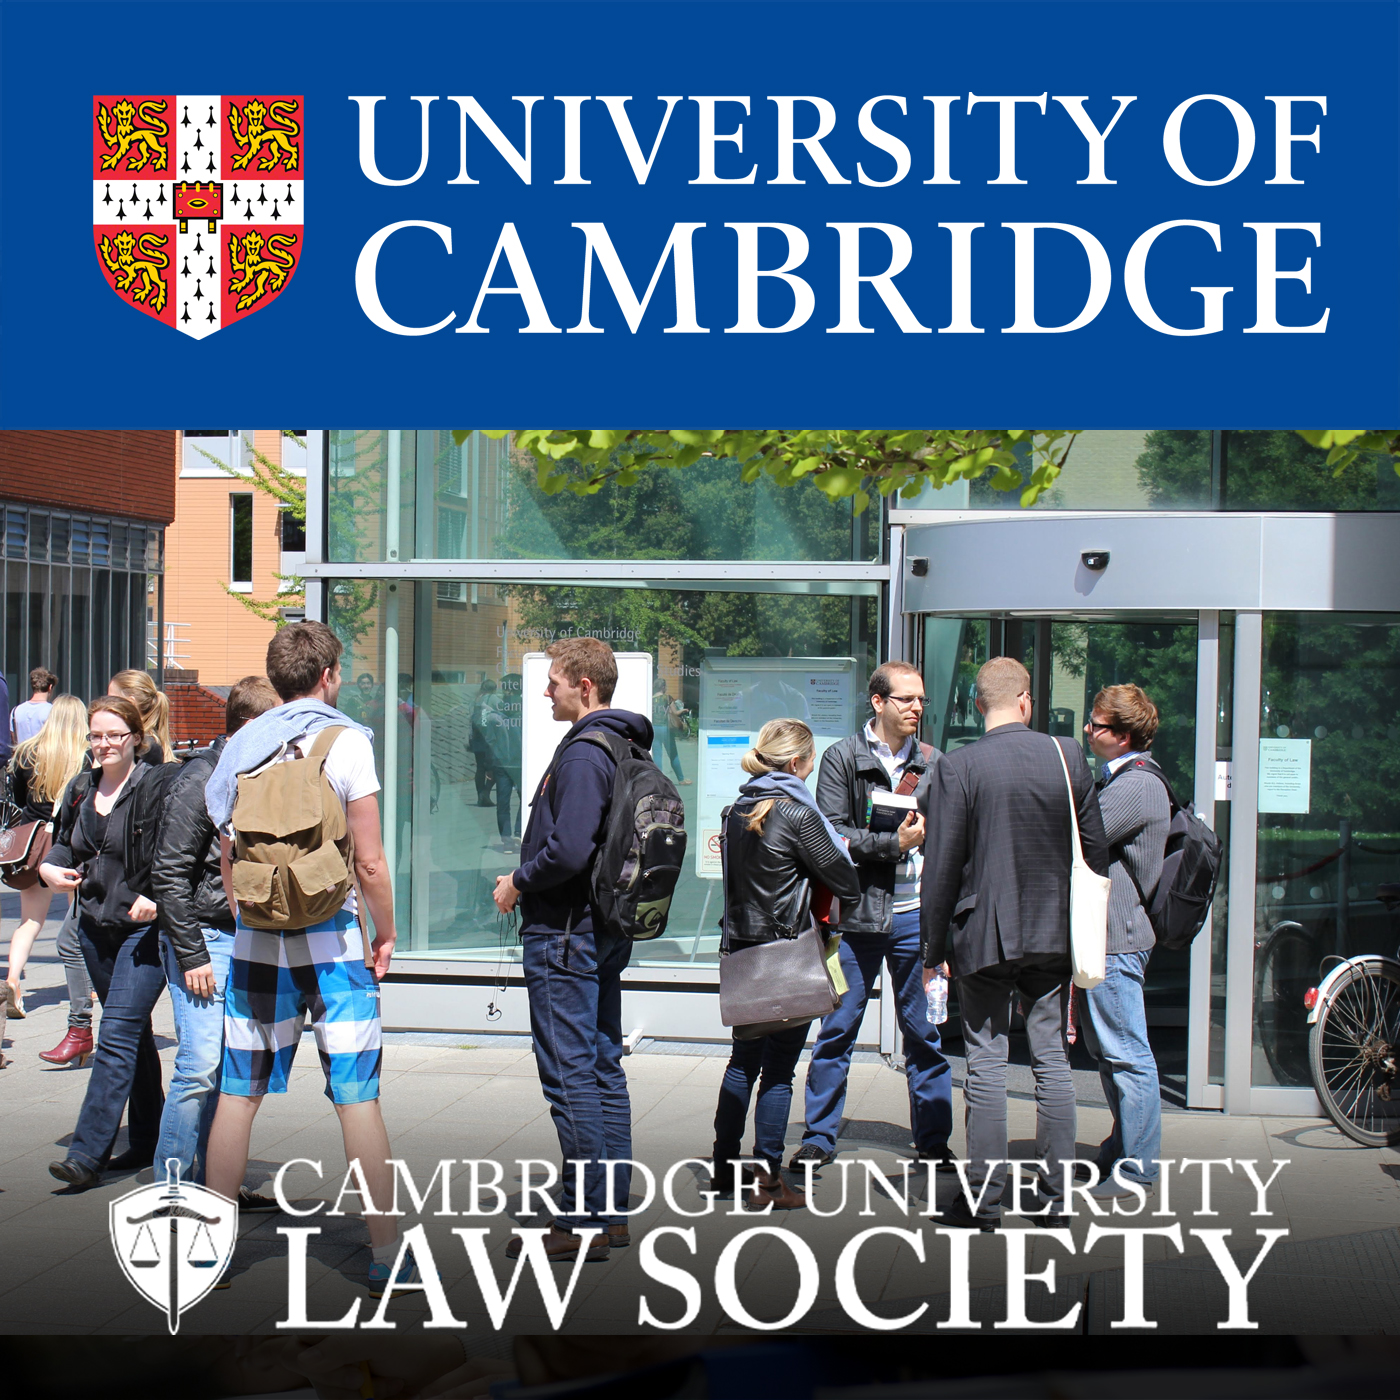 Cambridge University Law Society Speakers's image